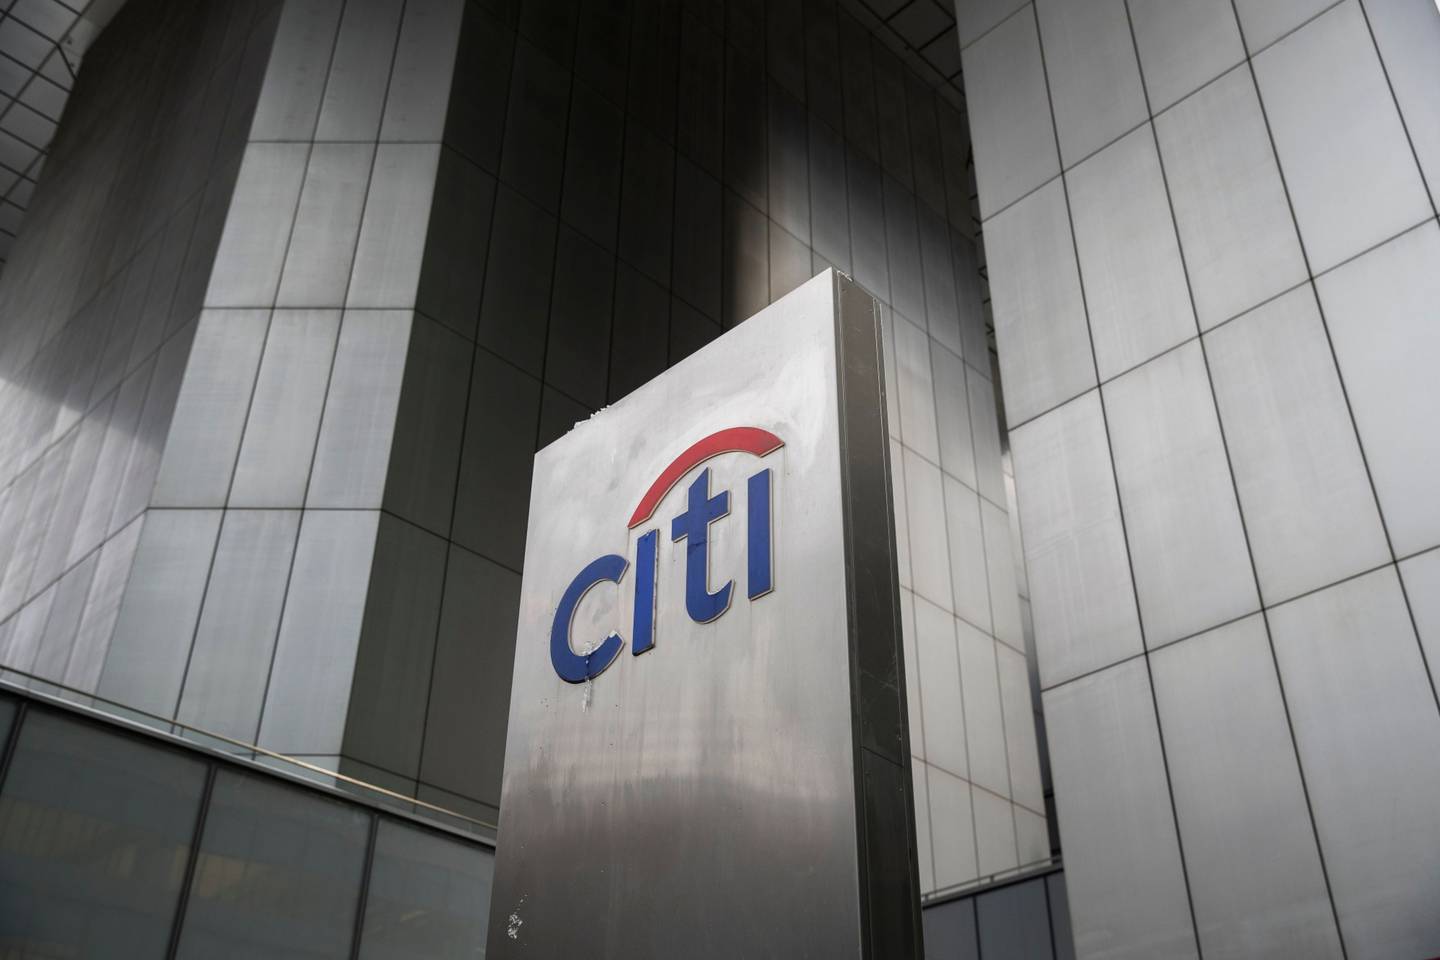 Como parte del proceso de liquidación, Citi afirmó que seguirá buscando activamente la venta de carteras dentro de su negocio de banca de consumo en China.